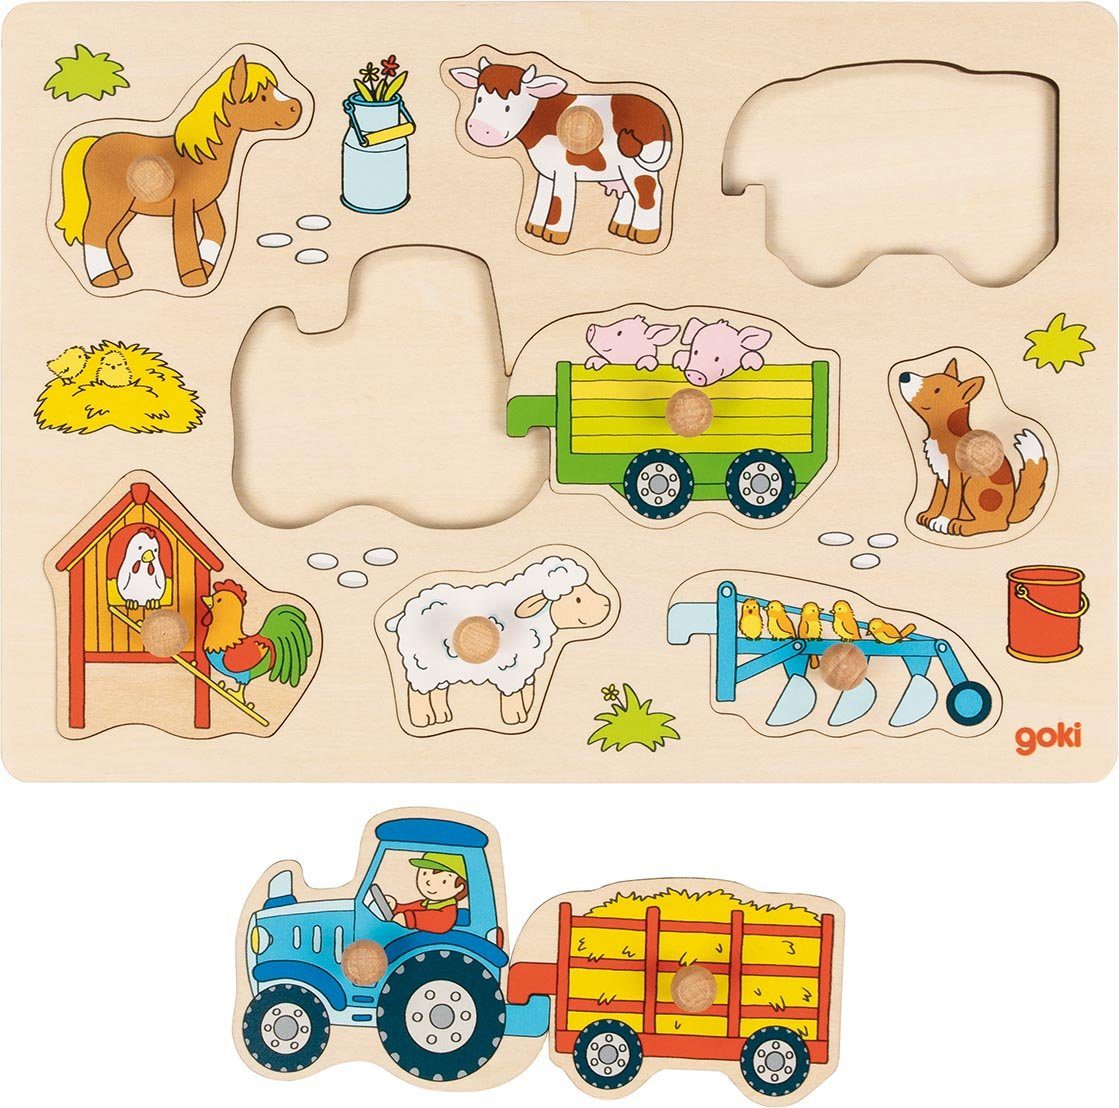 goki Steckpuzzle Traktor mit Anhängern Holz-Steckpuzzle Puzzle, 9 Puzzleteile, Anhänger und Traktor lassen sich auch ausserhalb des Puzzles verbinden